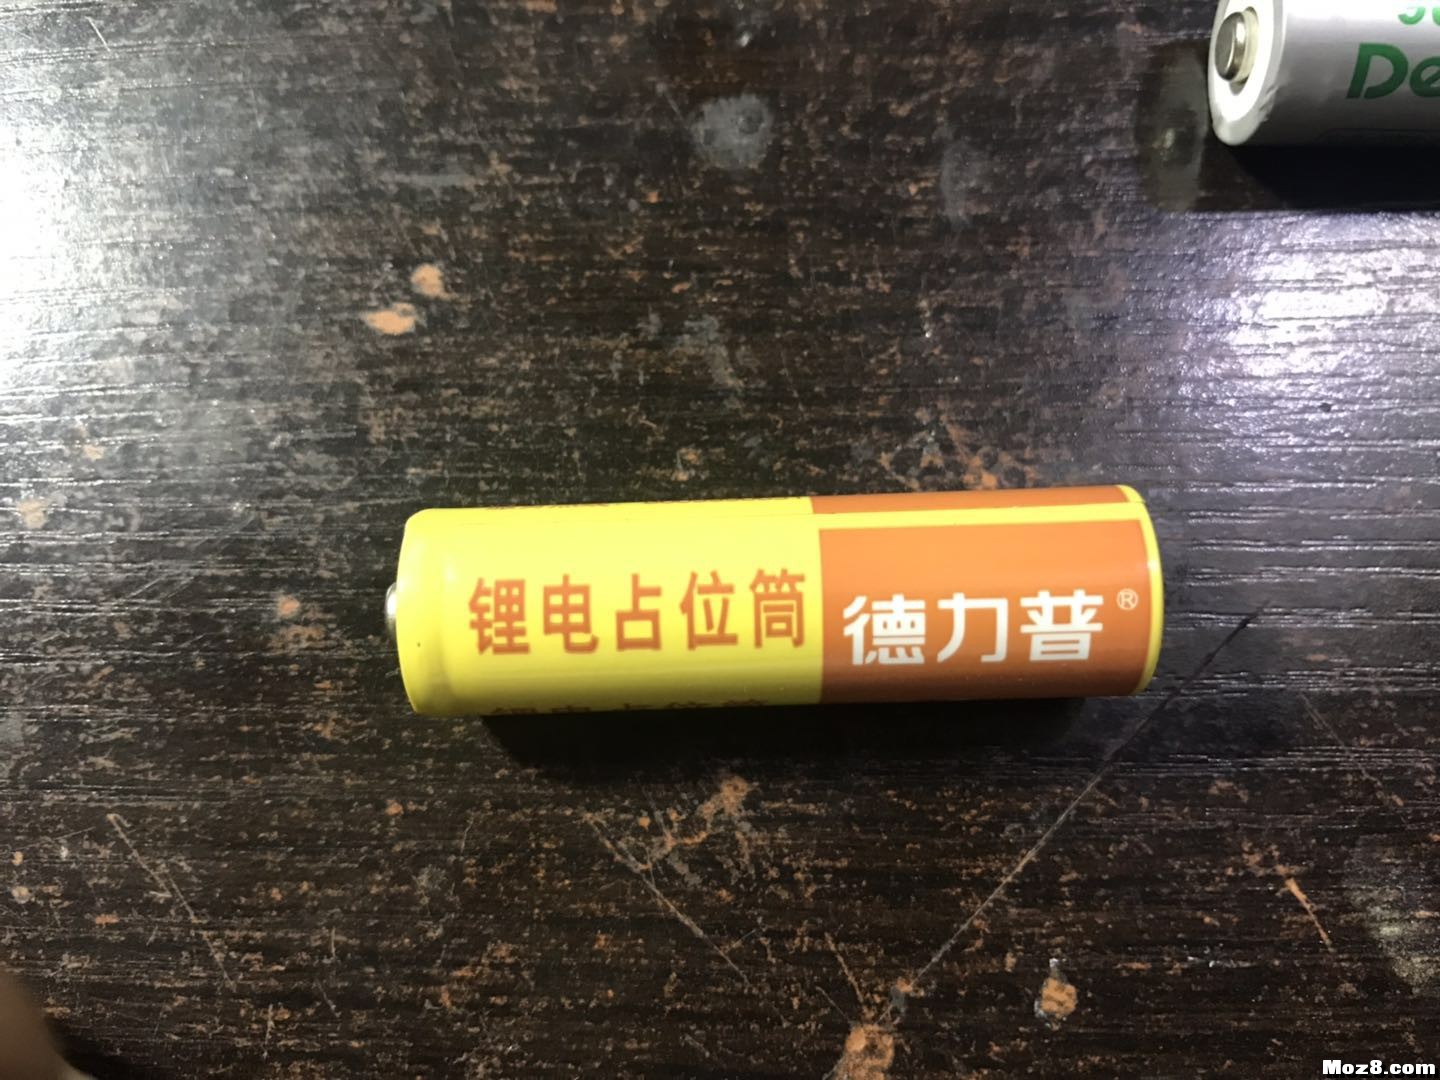 有朋友用这种磷酸铁锂电吗 电池,富斯 作者:skvxin 8913 